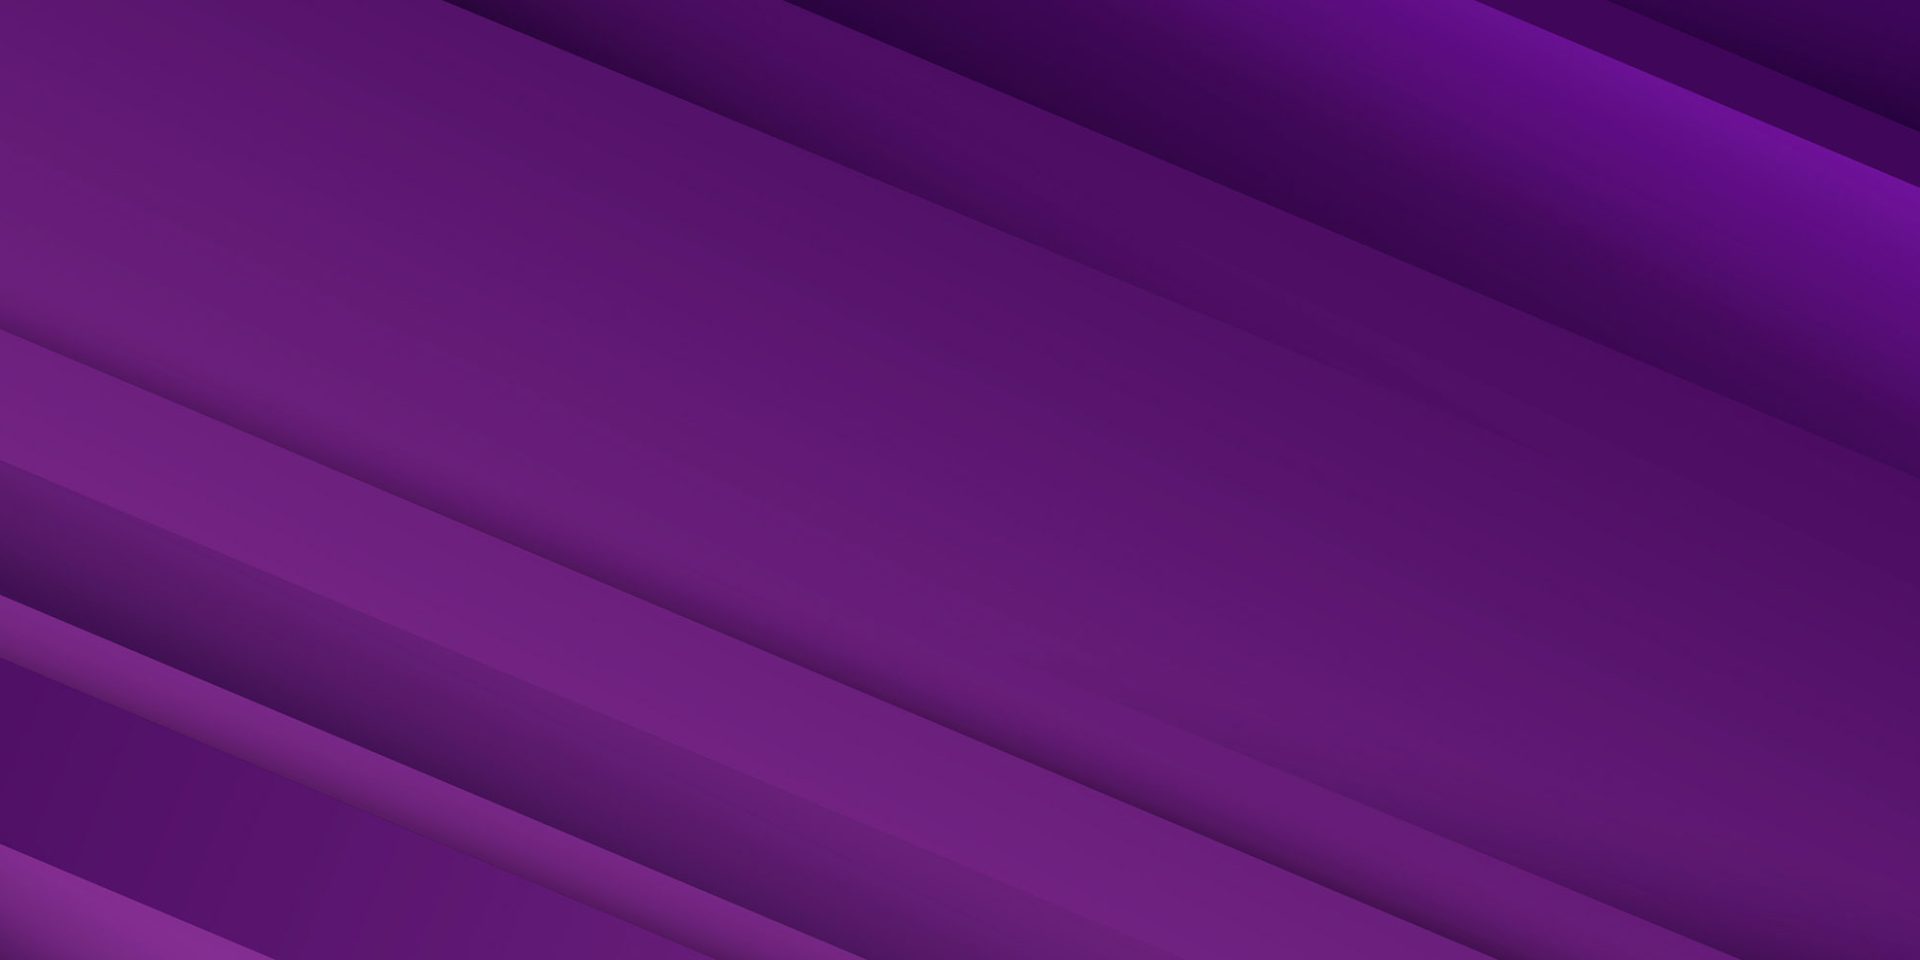 Background violet